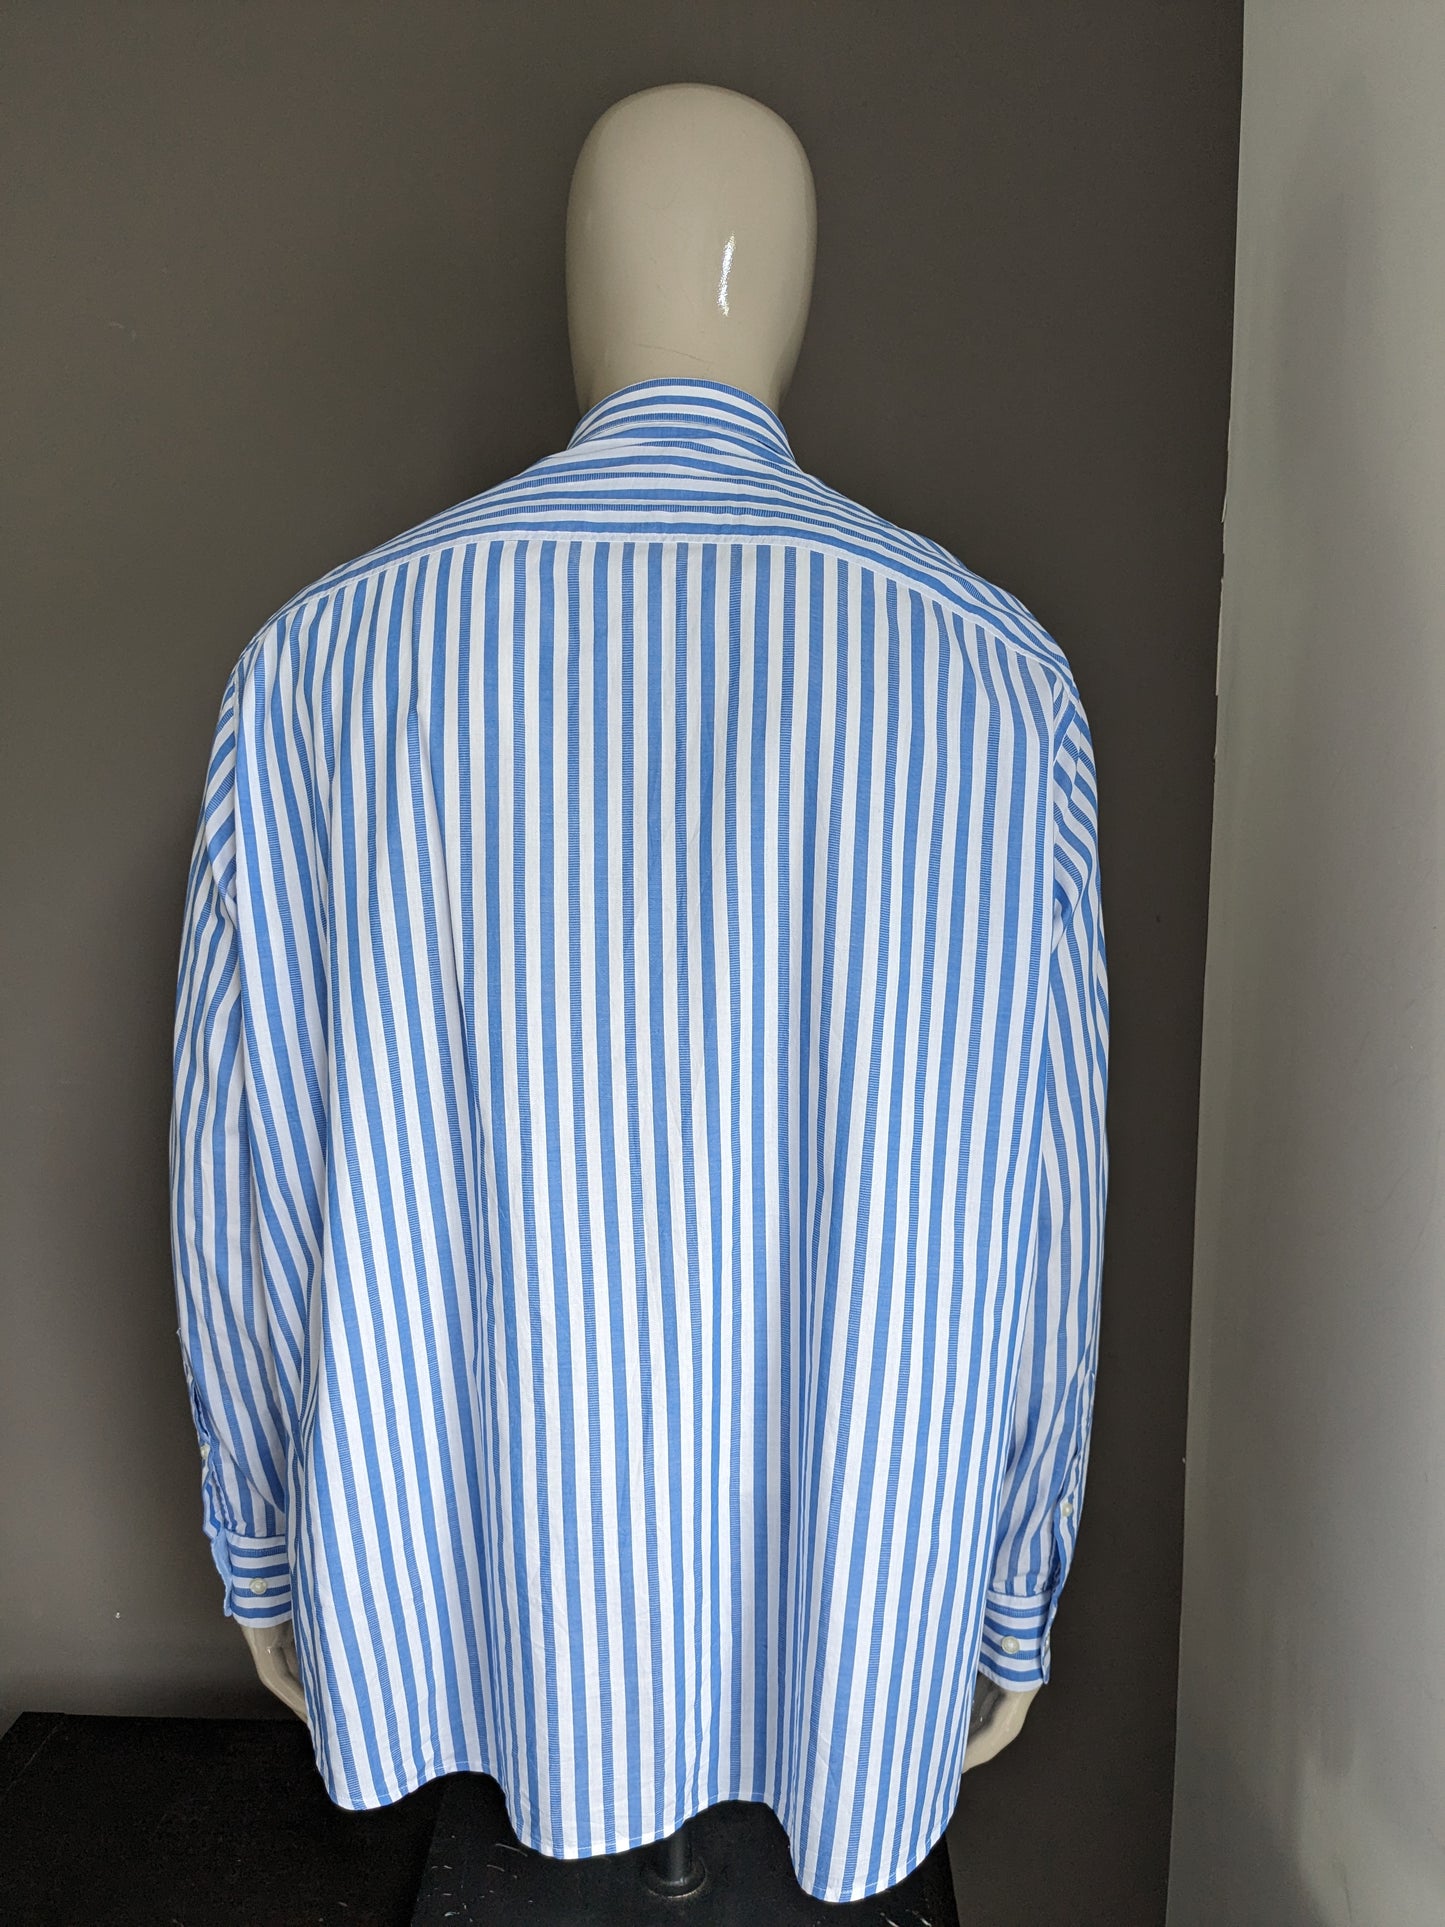 Su Straight up shirt. Blue white striped. Size 3XL / XXXL.